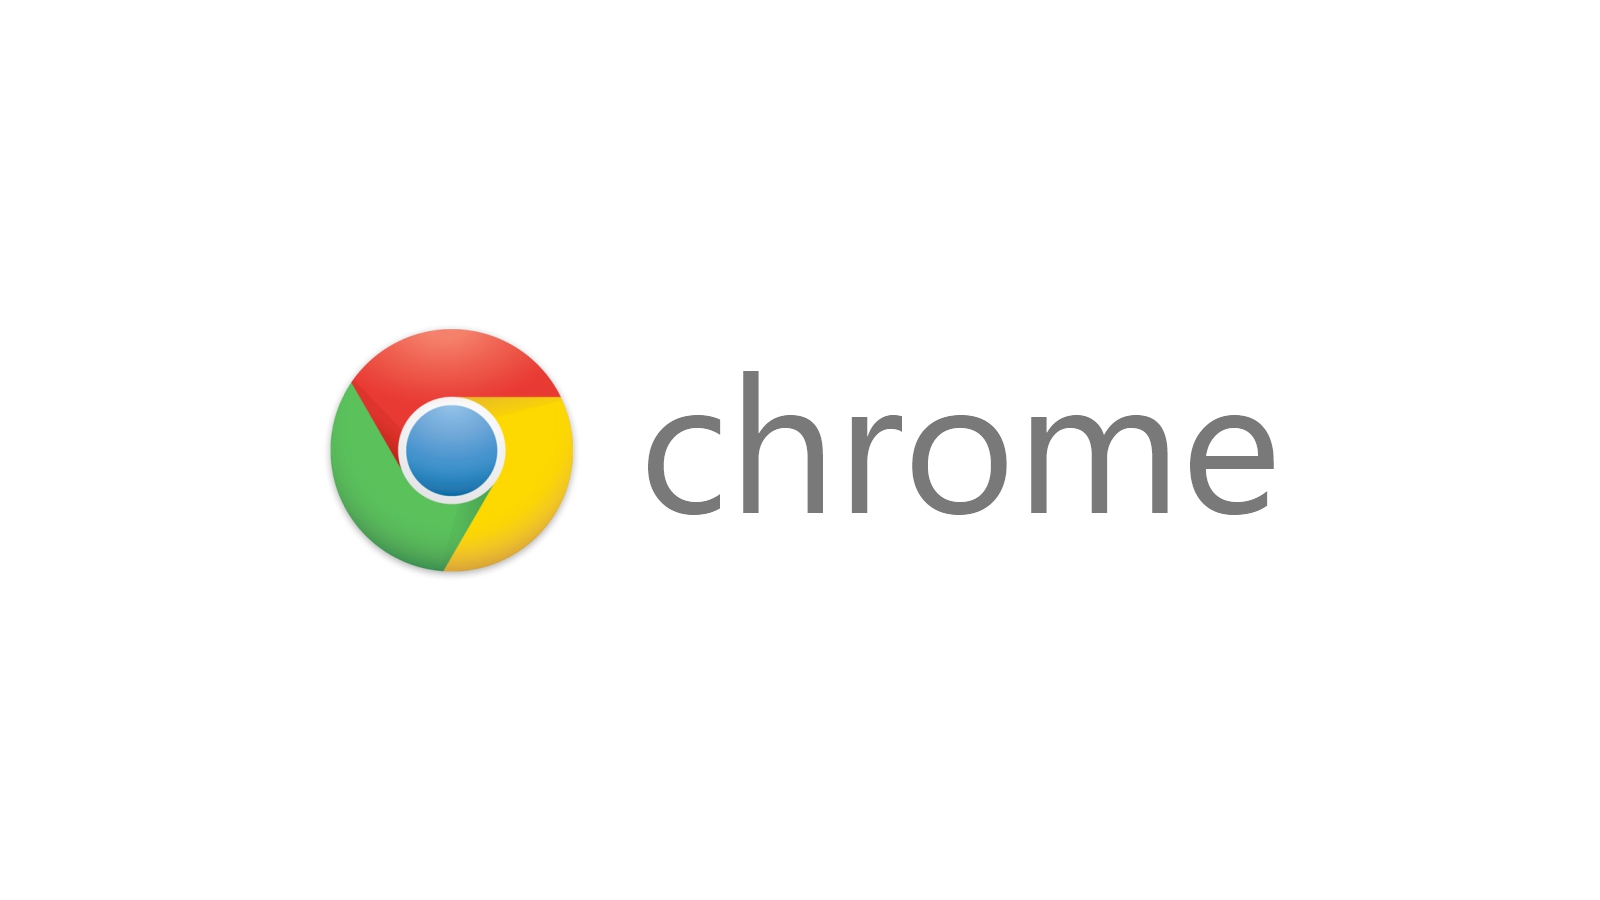 Chrome hiện tại sẽ cảnh báo bạn về các trang HTTP không bảo mật